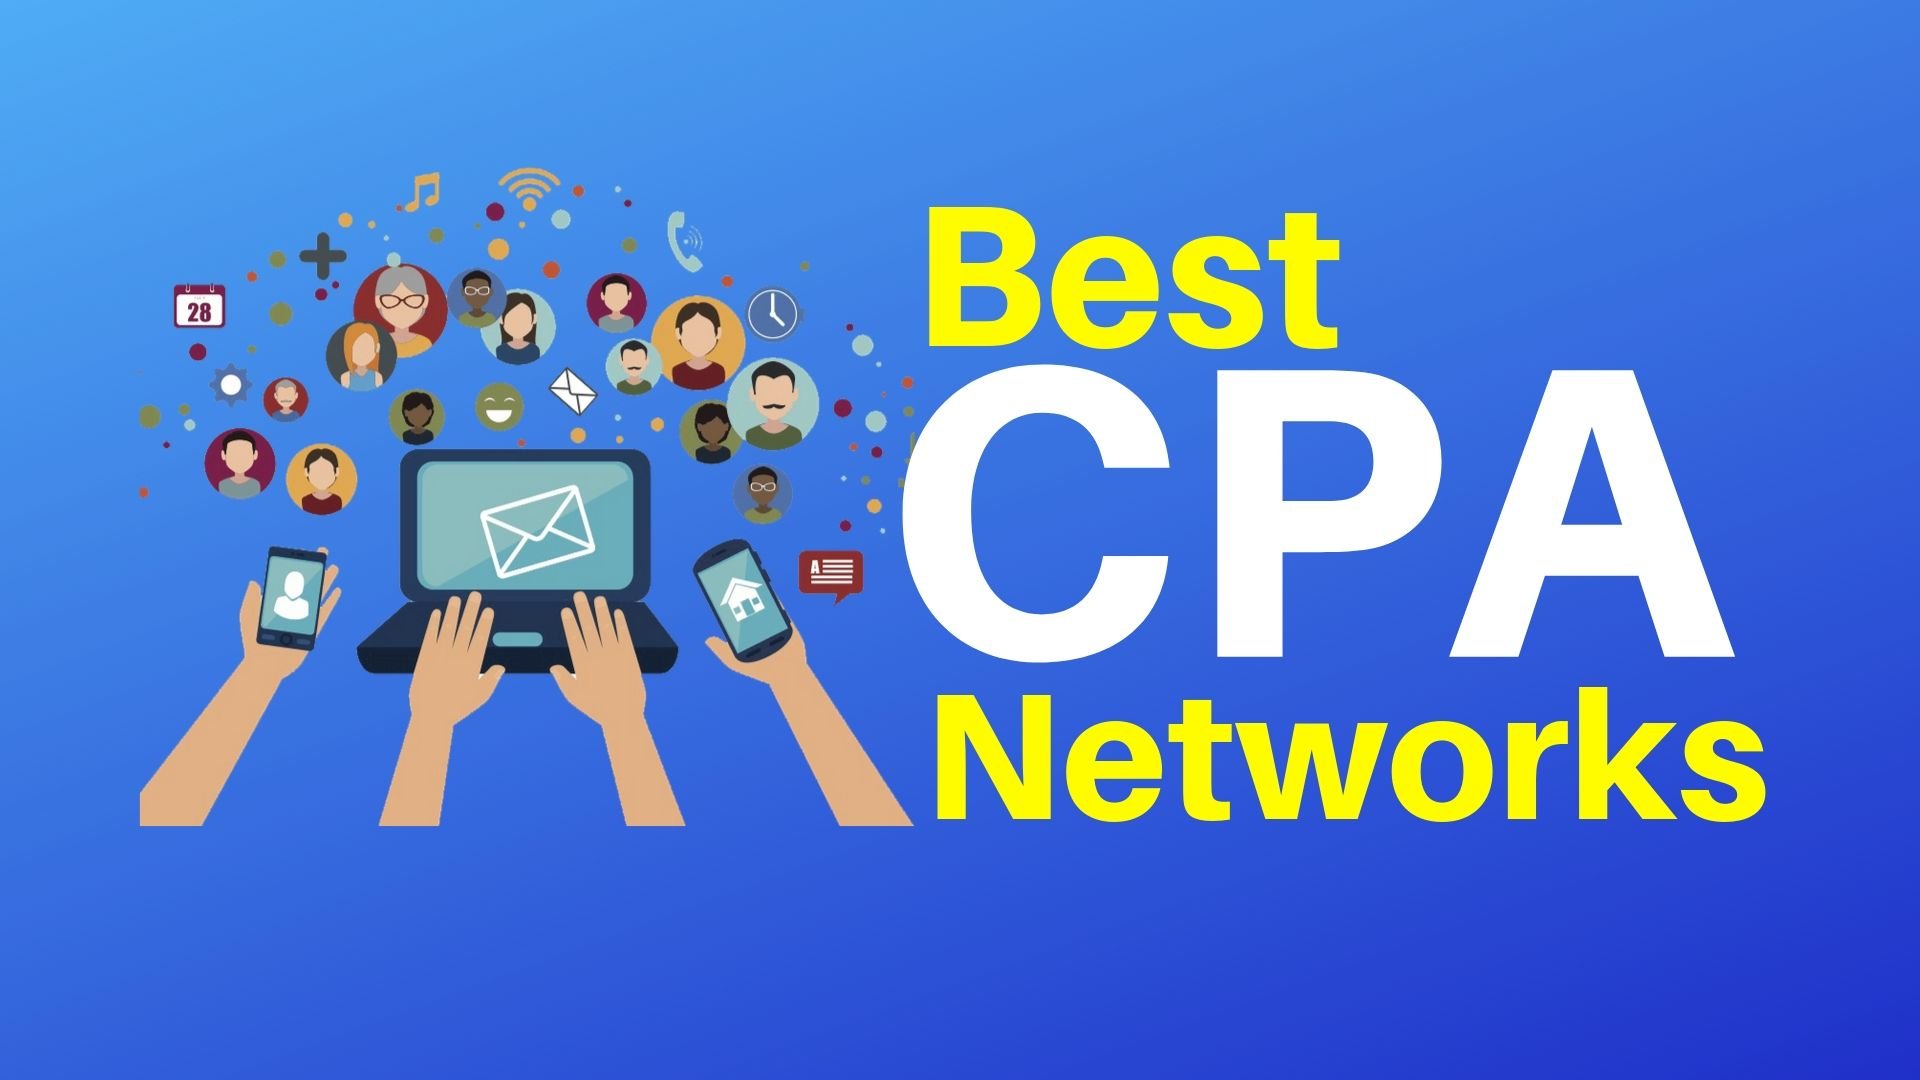 Cpa в маркетинге. CPA сети. CPA маркетинг. Сра сети что это. CPA что это такое в рекламе.